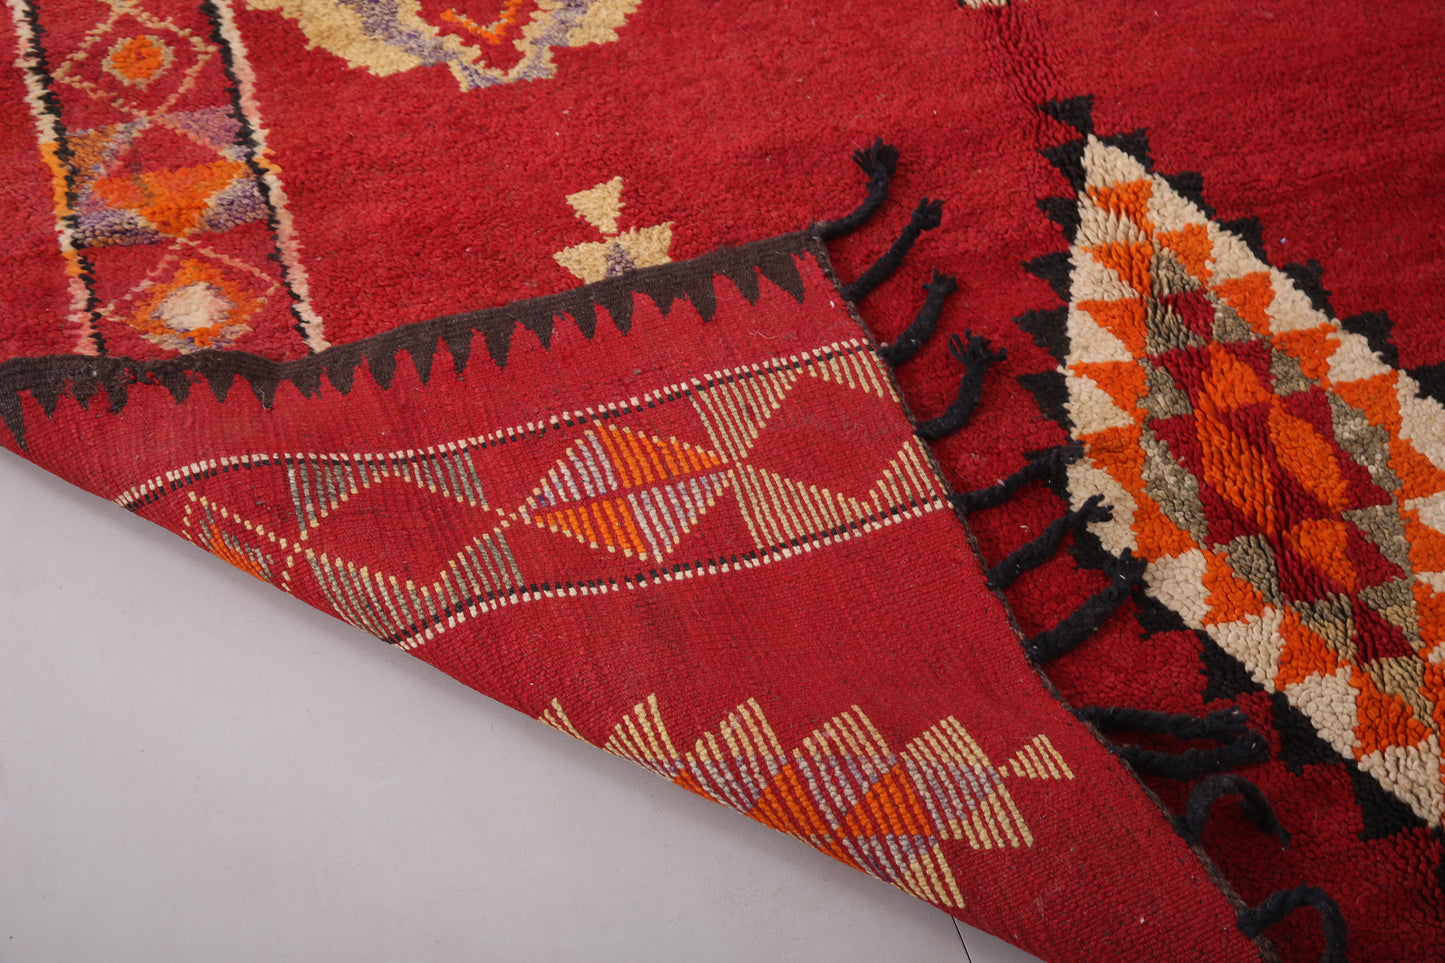 Roter handgemachter marokkanischer Boujaad-Teppich 6,3 FT x 9,8 FT - roter Marokko-Teppich - Vintage-Tribal-Teppich - handgemachter Berber-Teppich - einzigartiger Vintage-Teppich